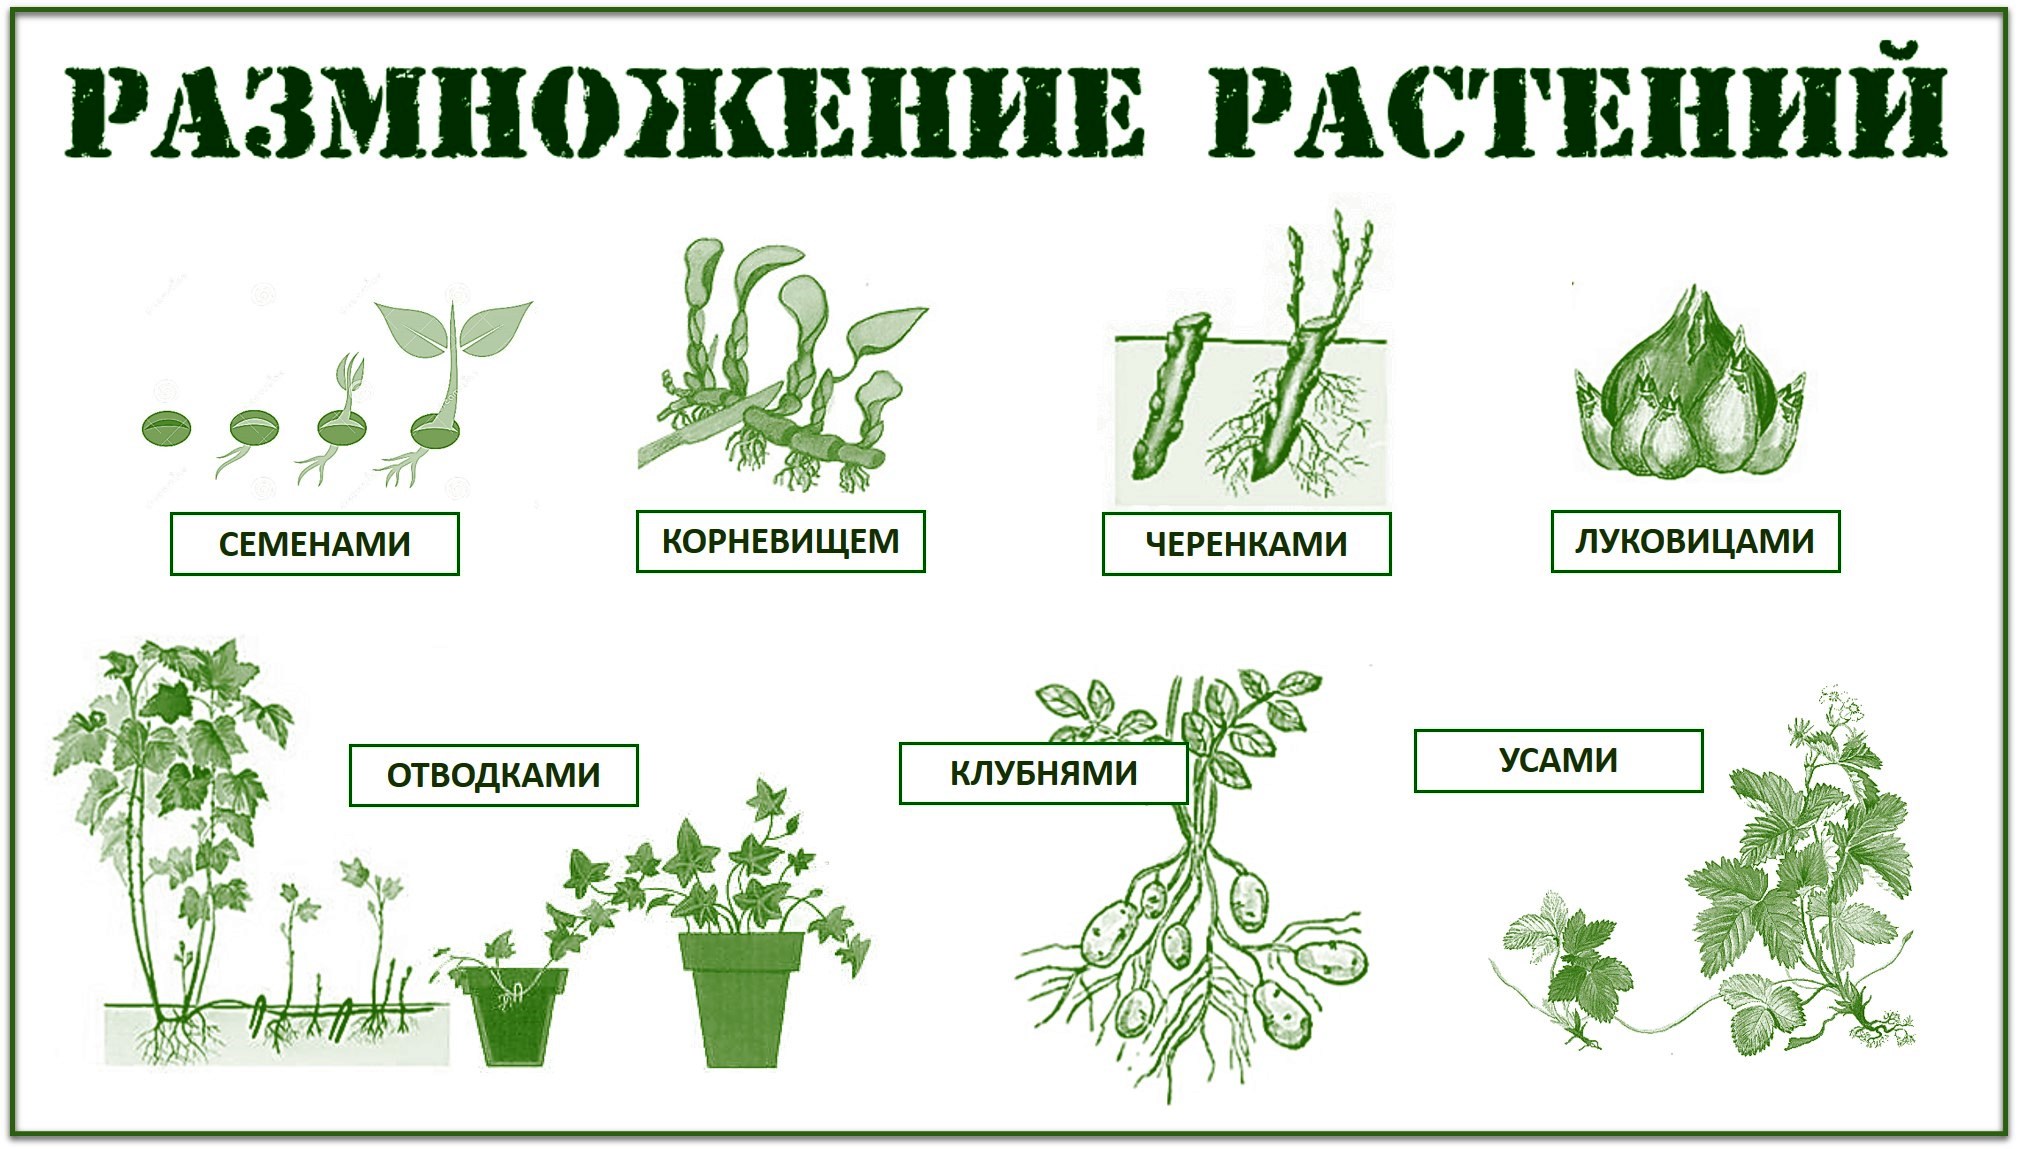 Способ растений. Размножение растений семенами и вегетативно. Вегетативное размножение это размножение семенами. Способы размножения растений рисунки. Схема способы размножения растений.